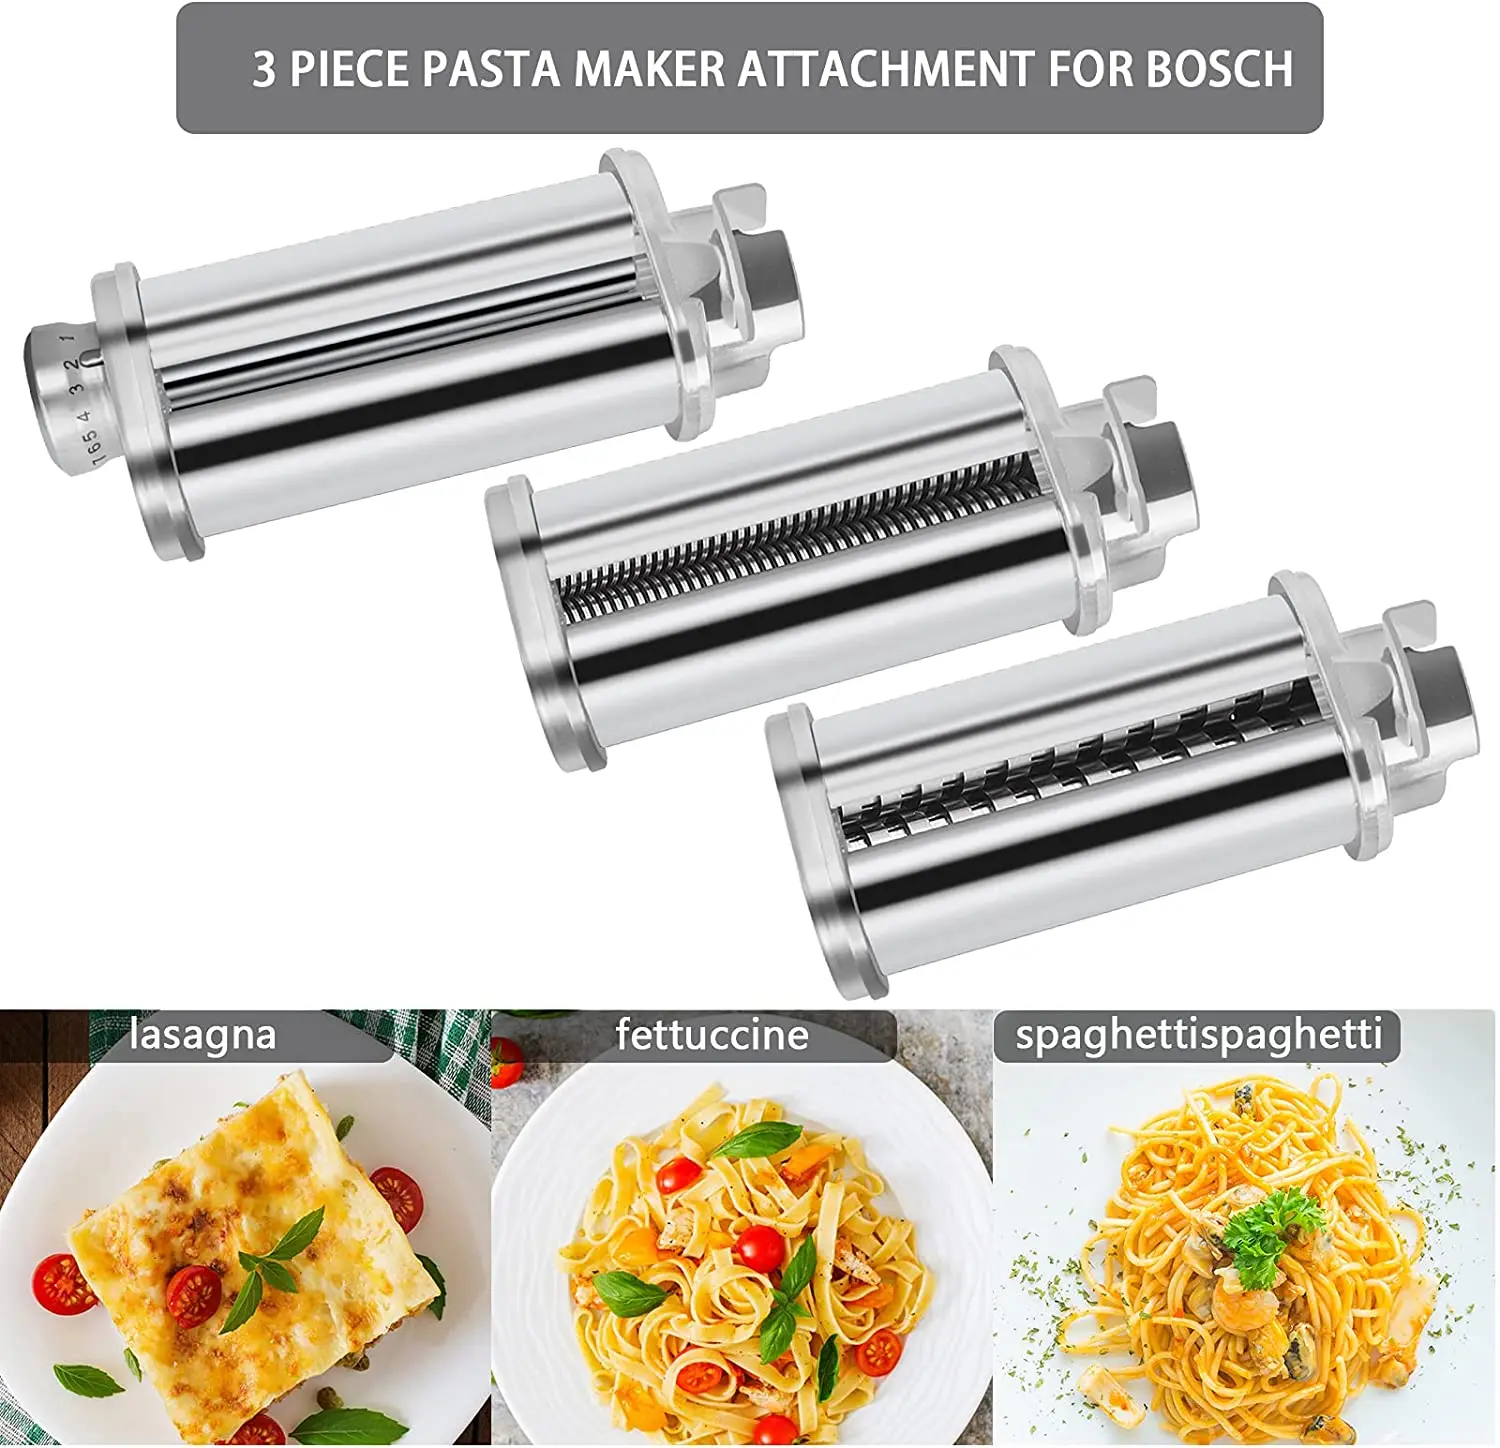 https://ae01.alicdn.com/kf/H1f73e749f0db40c687c5d432dc5e5fcf2/Pasta-Roller-Attachment-for-Bosch-Kitchen-Mixer-MUM2-5-Pasta-Sheet-Roller-Spaghetti-Fettuccine-Cutter-Maker.jpg